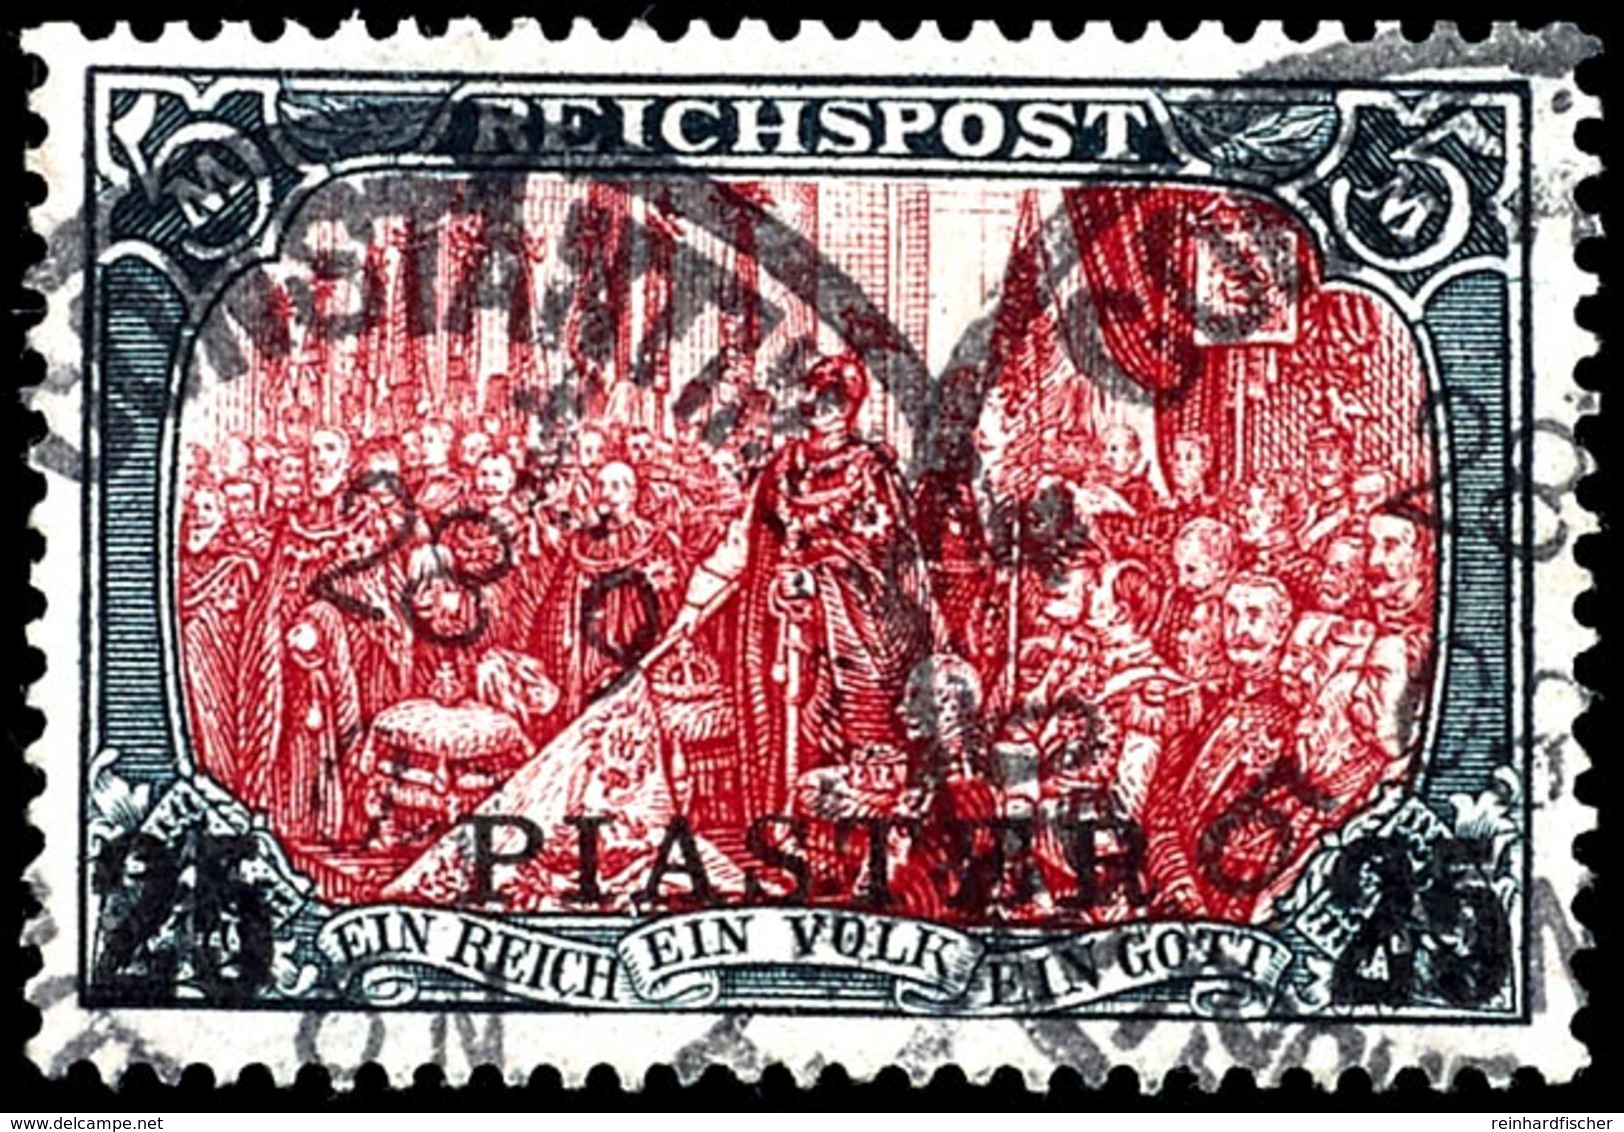 5 Mark Reichspost In Type II Mit Aufdruck "25 PIASTER", Tadellos, Gestempelt "CONSTANTINOPEL", Geprüft Bothe, Michel 550 - Turquie (bureaux)